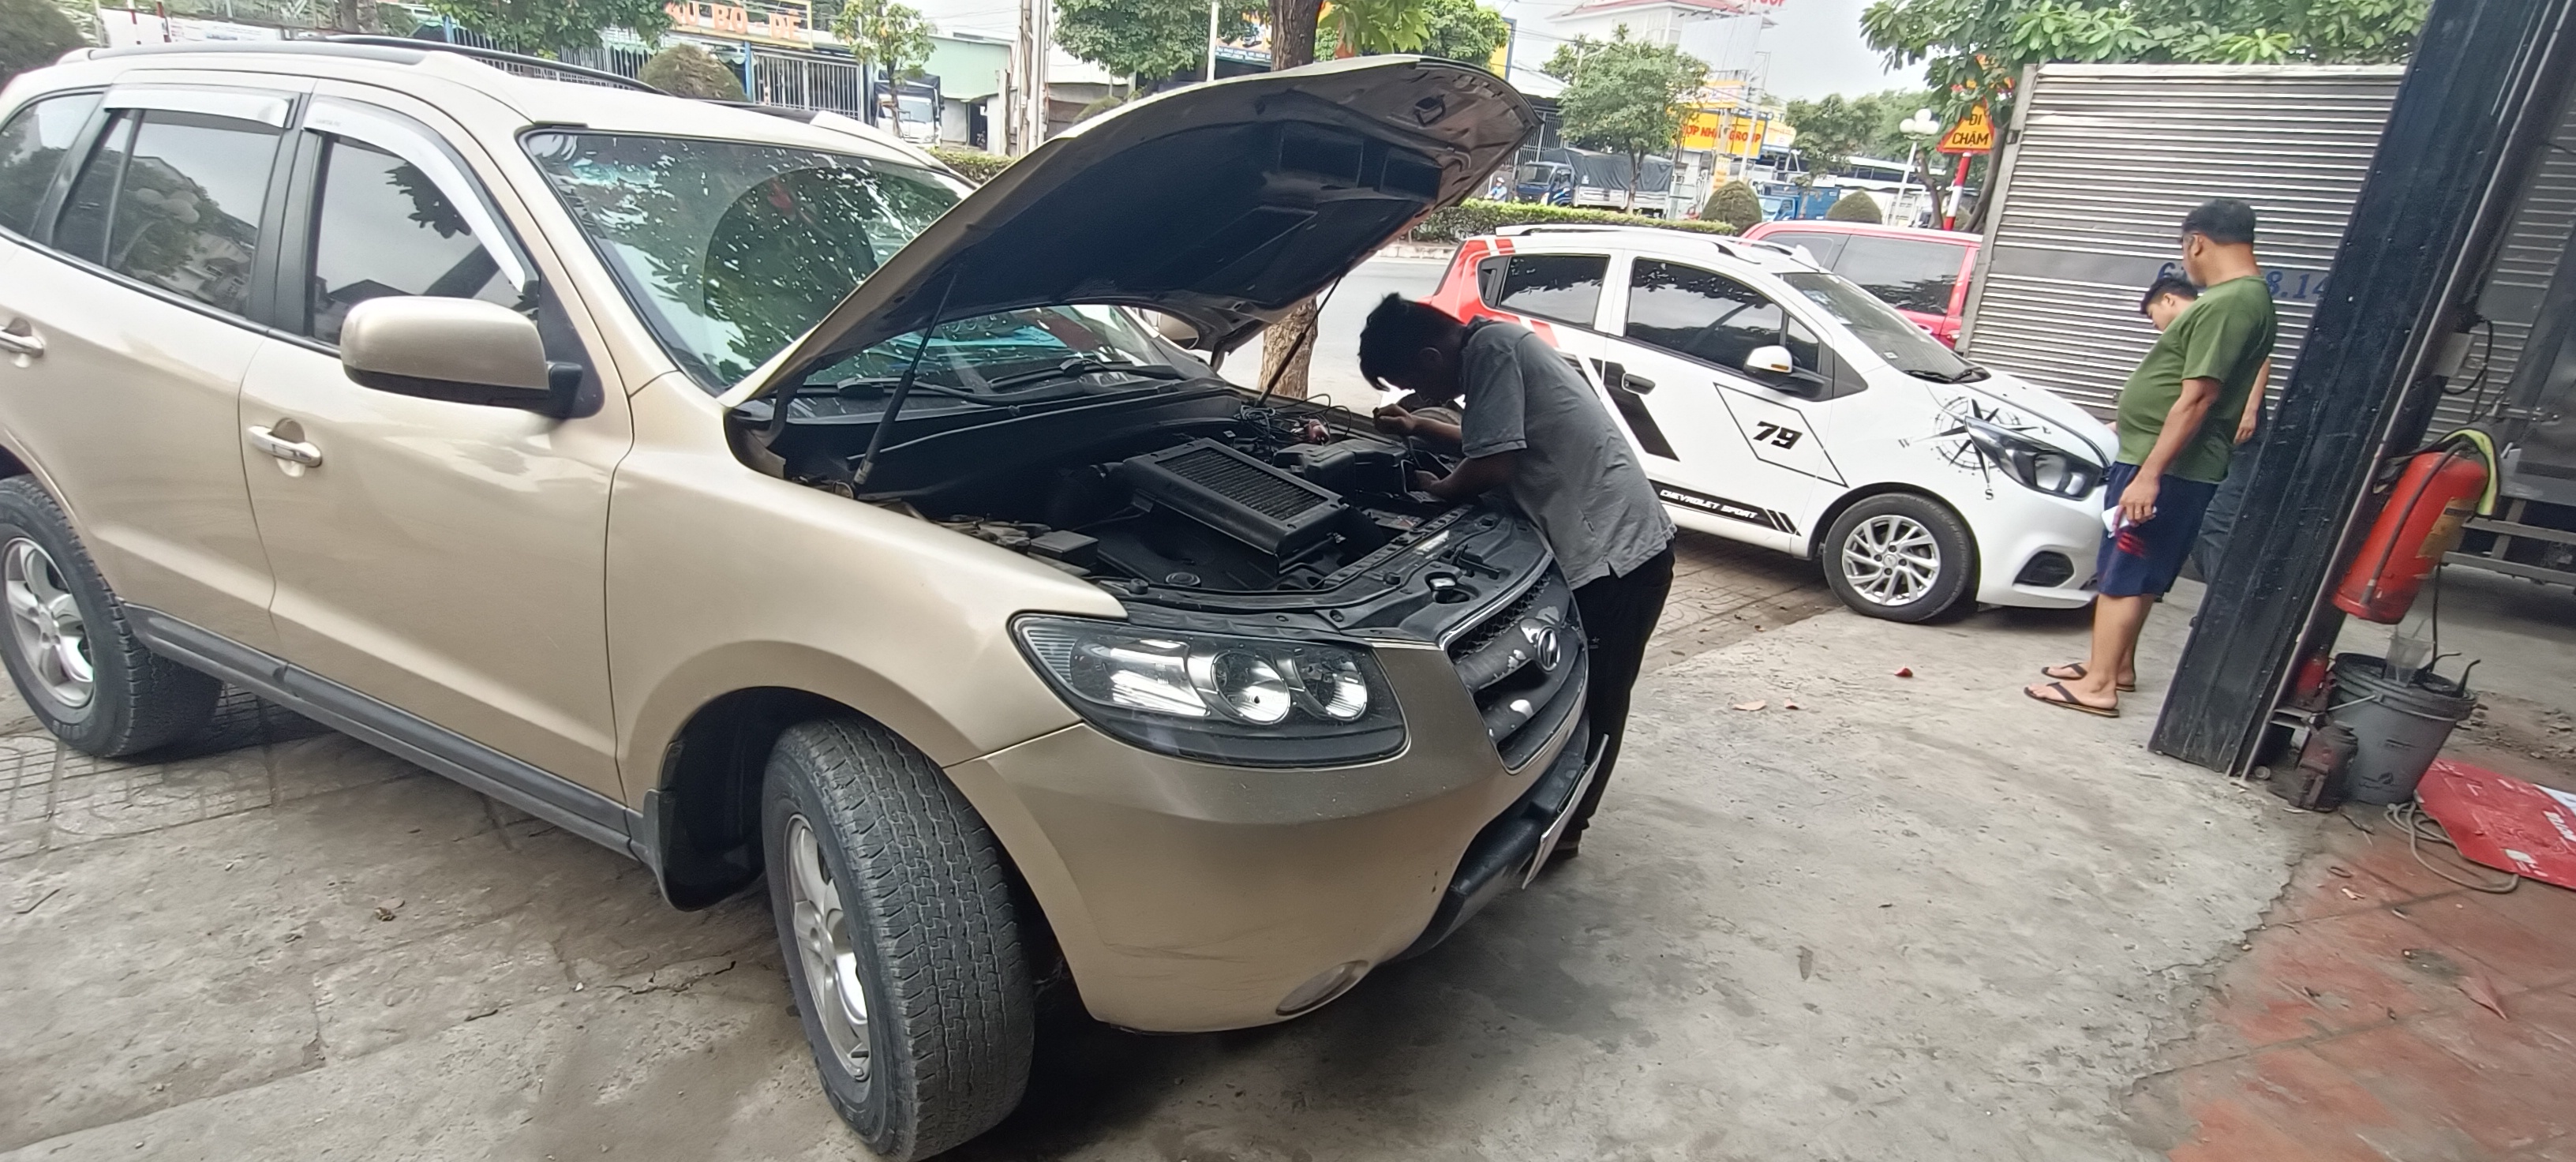 Dịch vụ Gara Sửa ô tô Thanh Bình giúp bạn sửa ô tô nhanh chóng và chuyên nghiệp tại Thuận An Bình Dương 